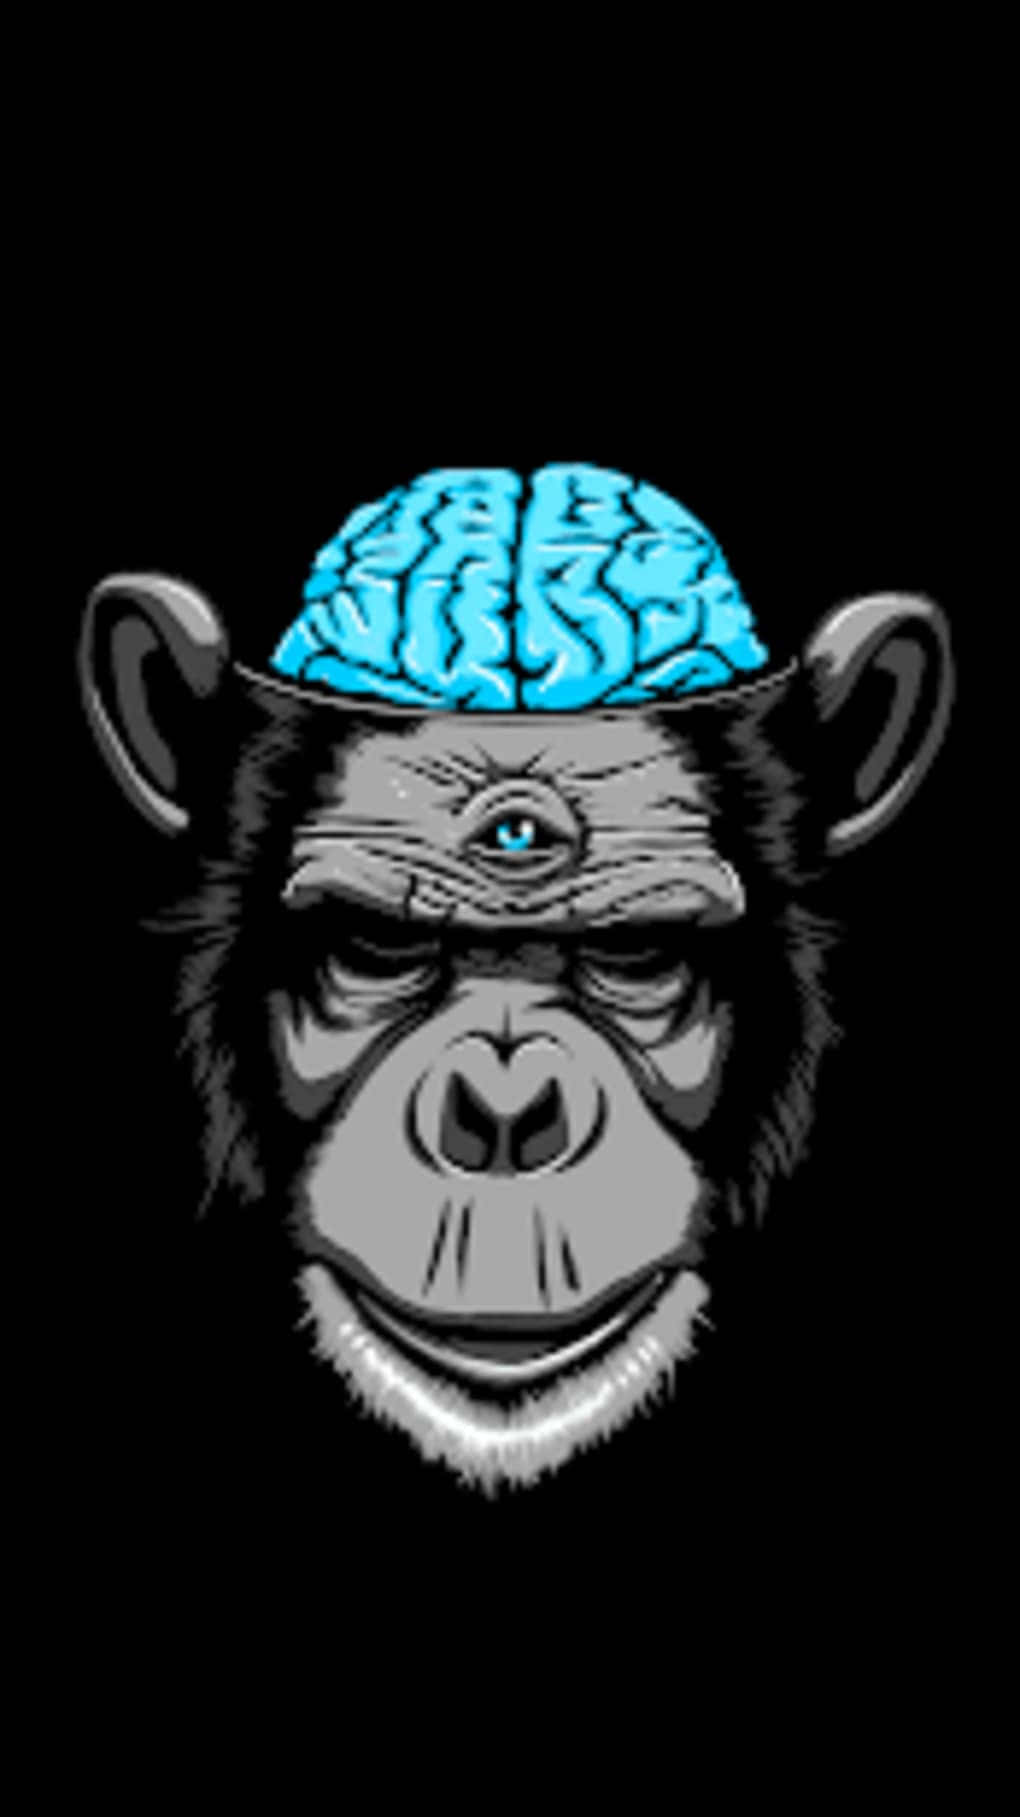 En chimpanse med et blåt hjerne på hans hoved Wallpaper